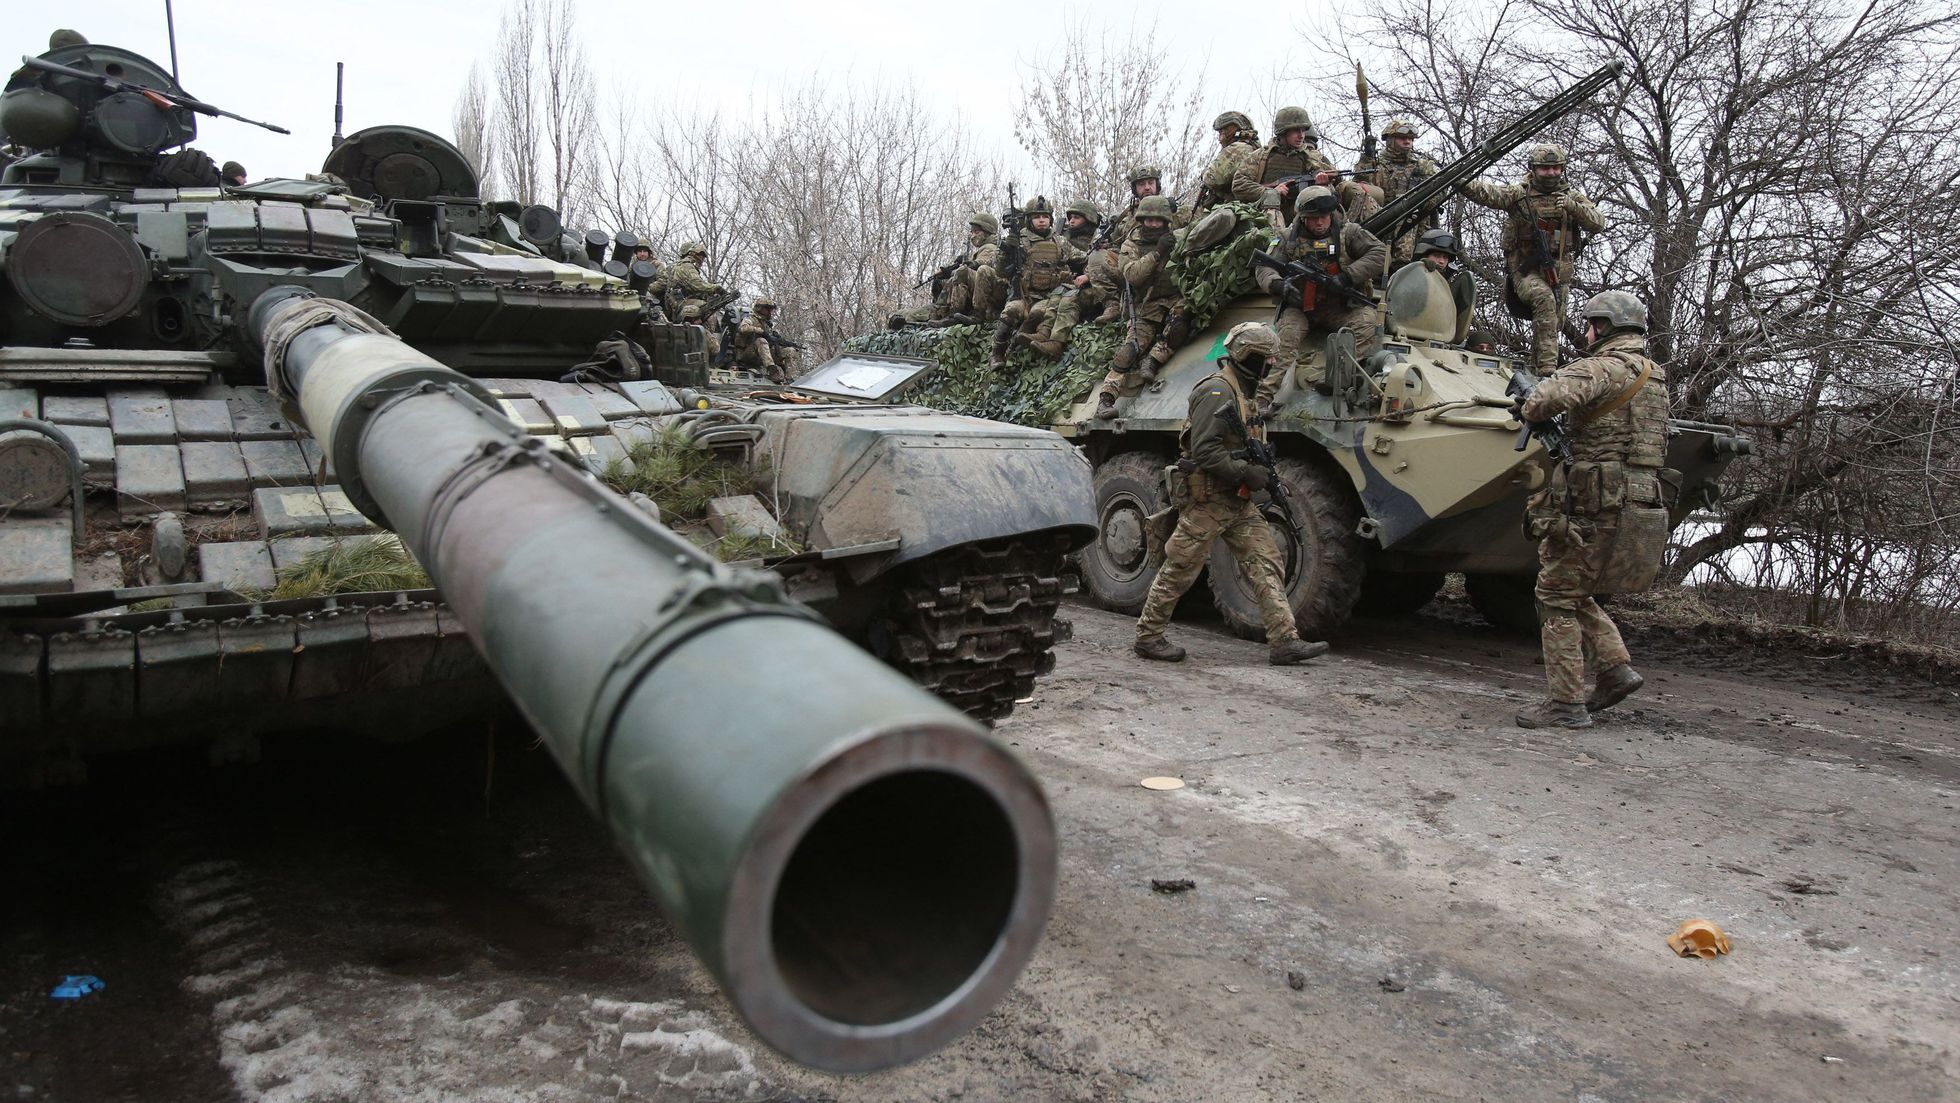 ¿Por qué Ucrania es una pieza clave en la geopolítica mundial?  Un análisis de Diego Montenegro